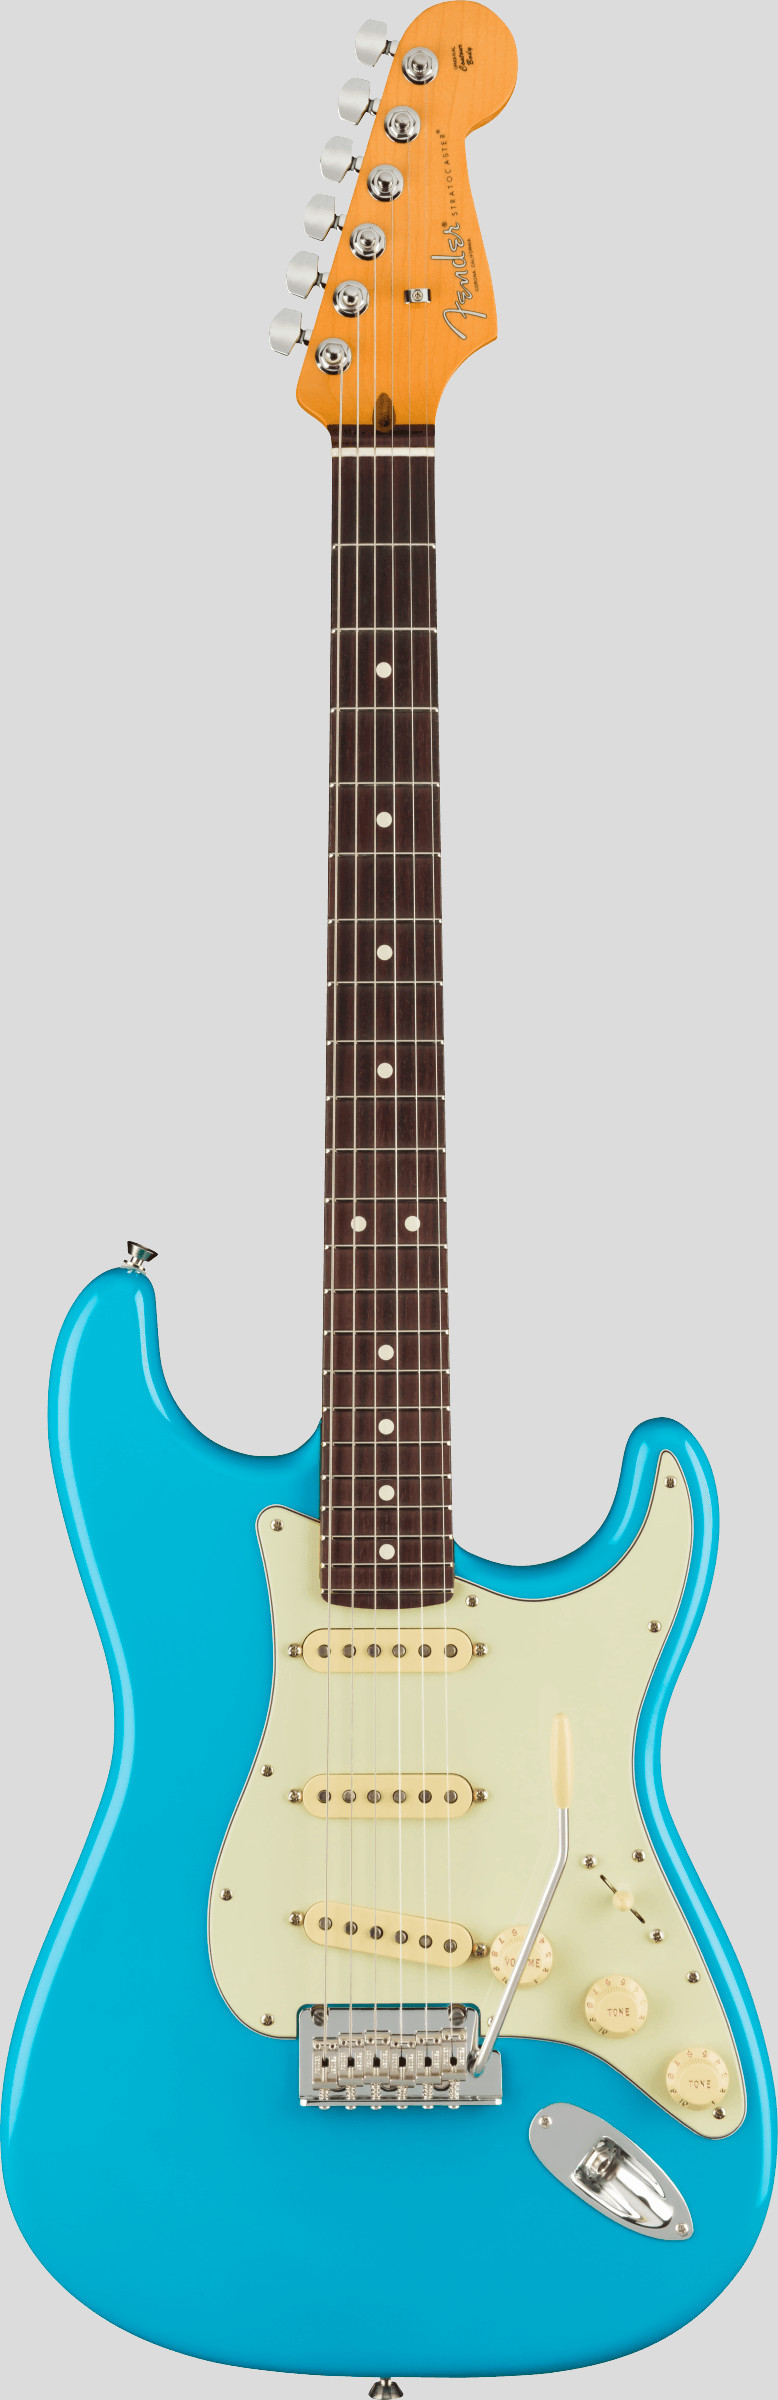 Fender American Professional II Stratocaster Miami Blue RW 1